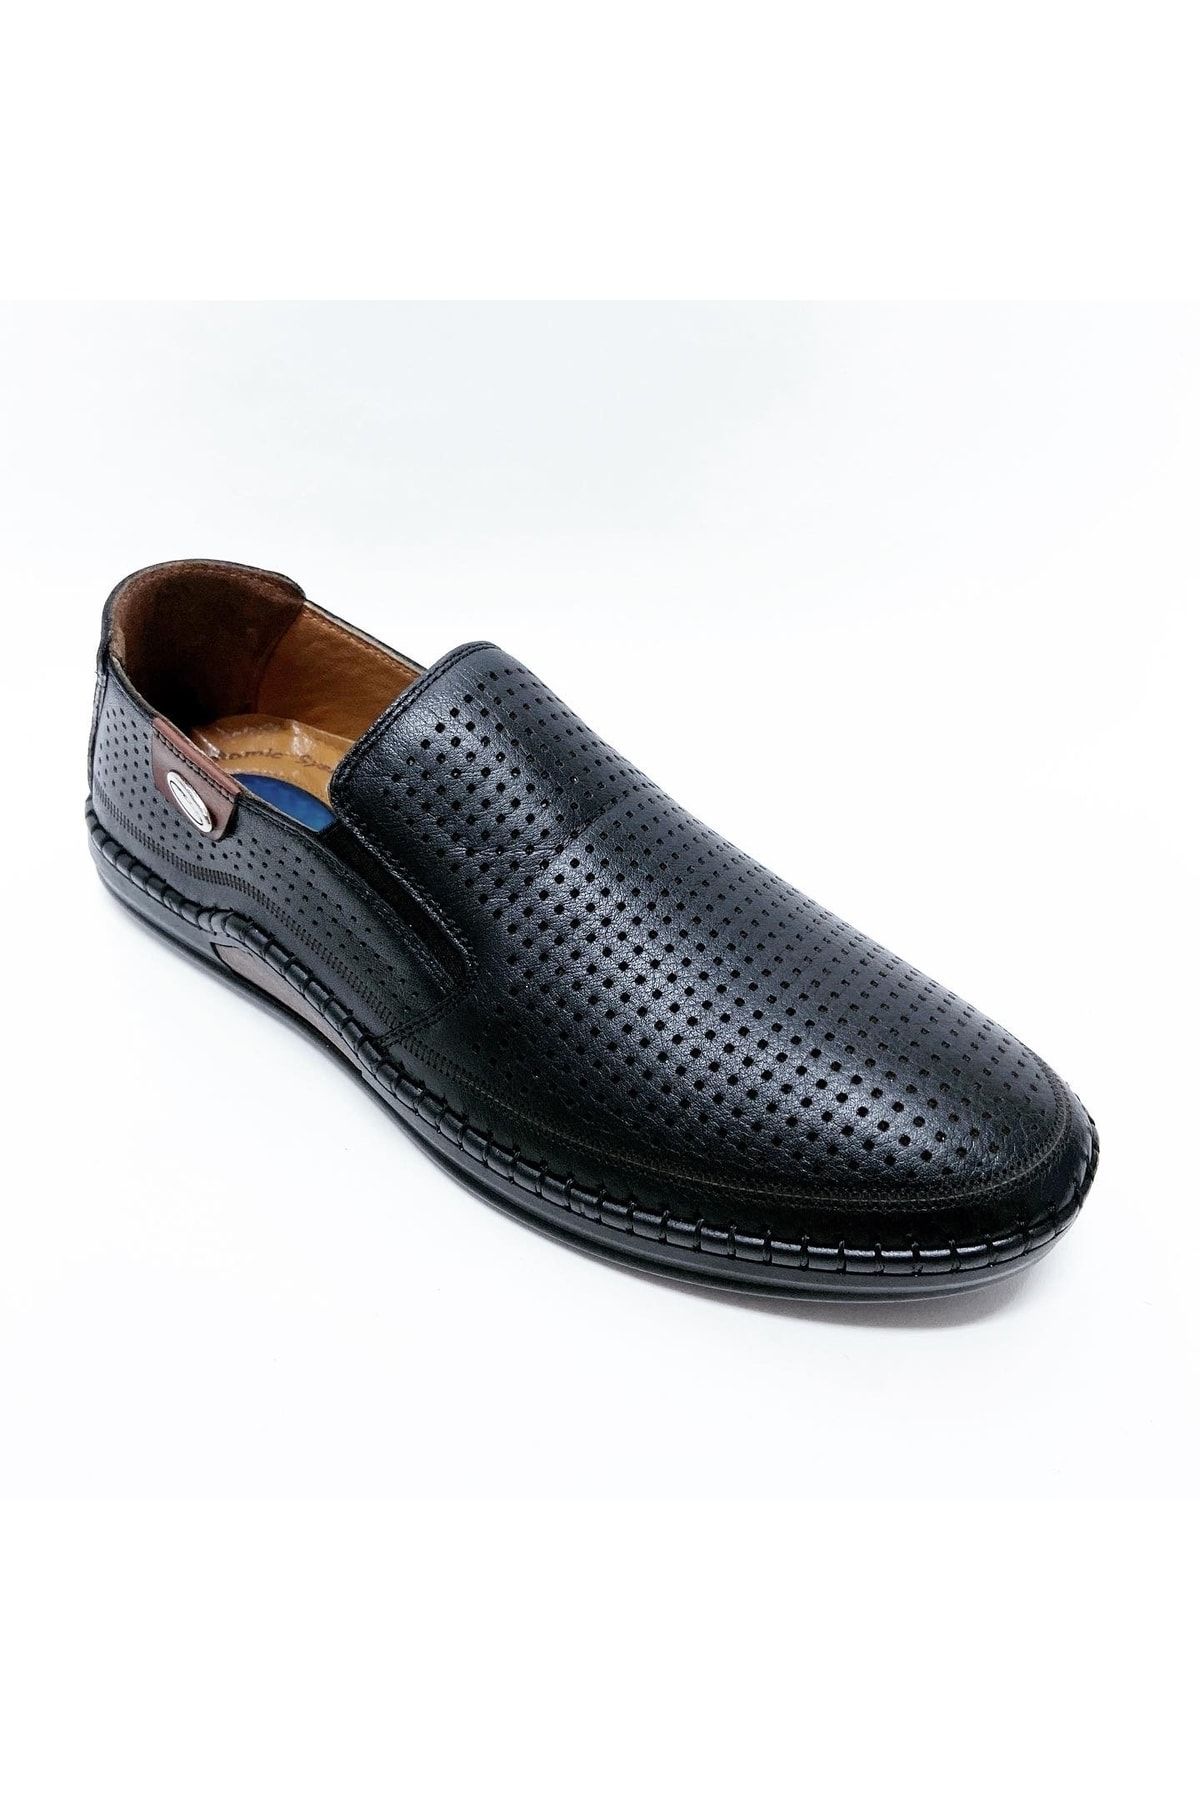 stok83 Catelli Erkek Hakiki Deri Zımbalı Yazlık Ayakkabı